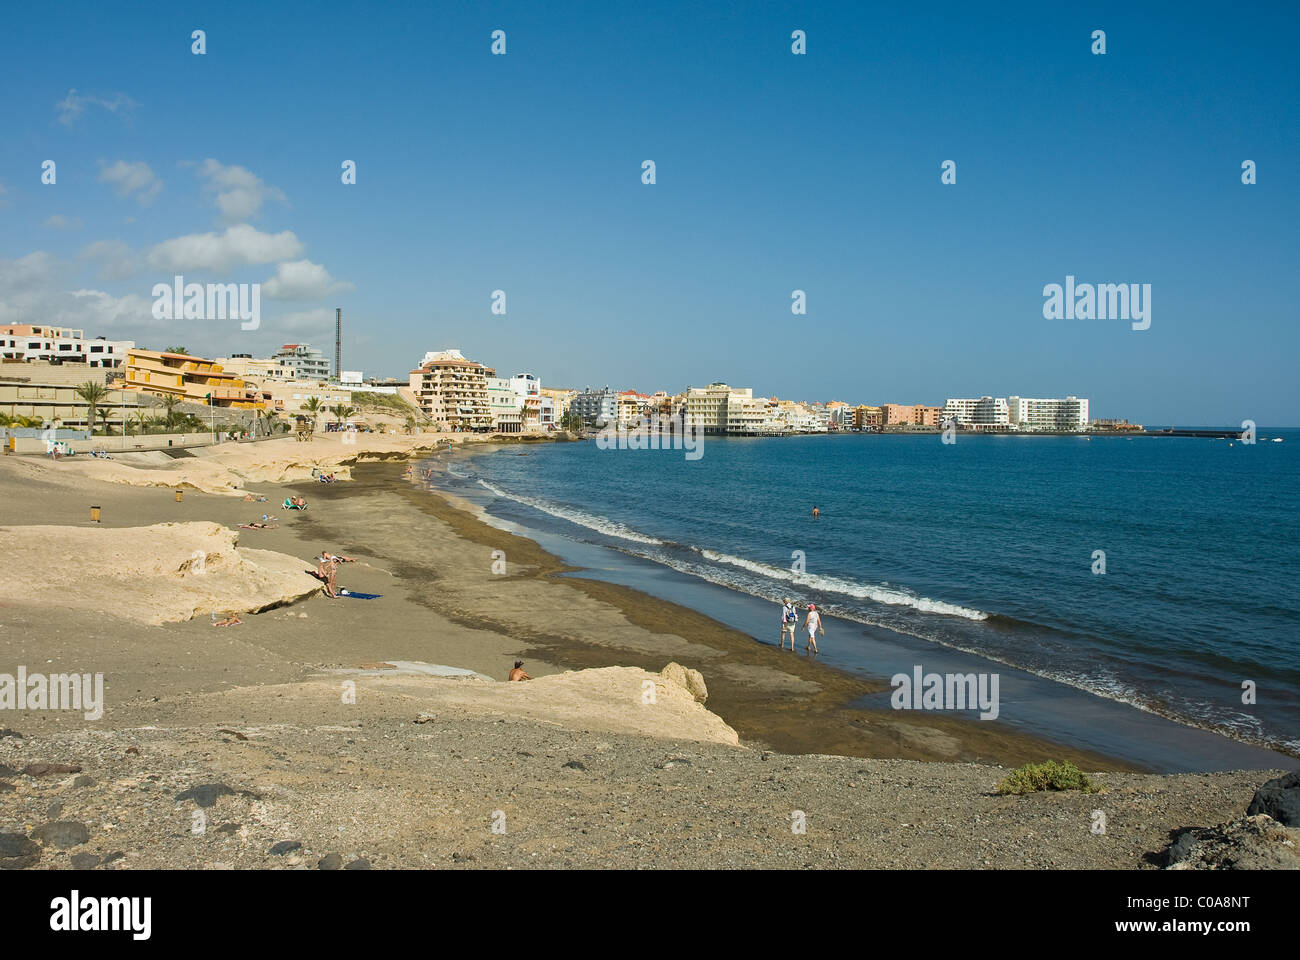 The beach at El Medano. Stock Photo